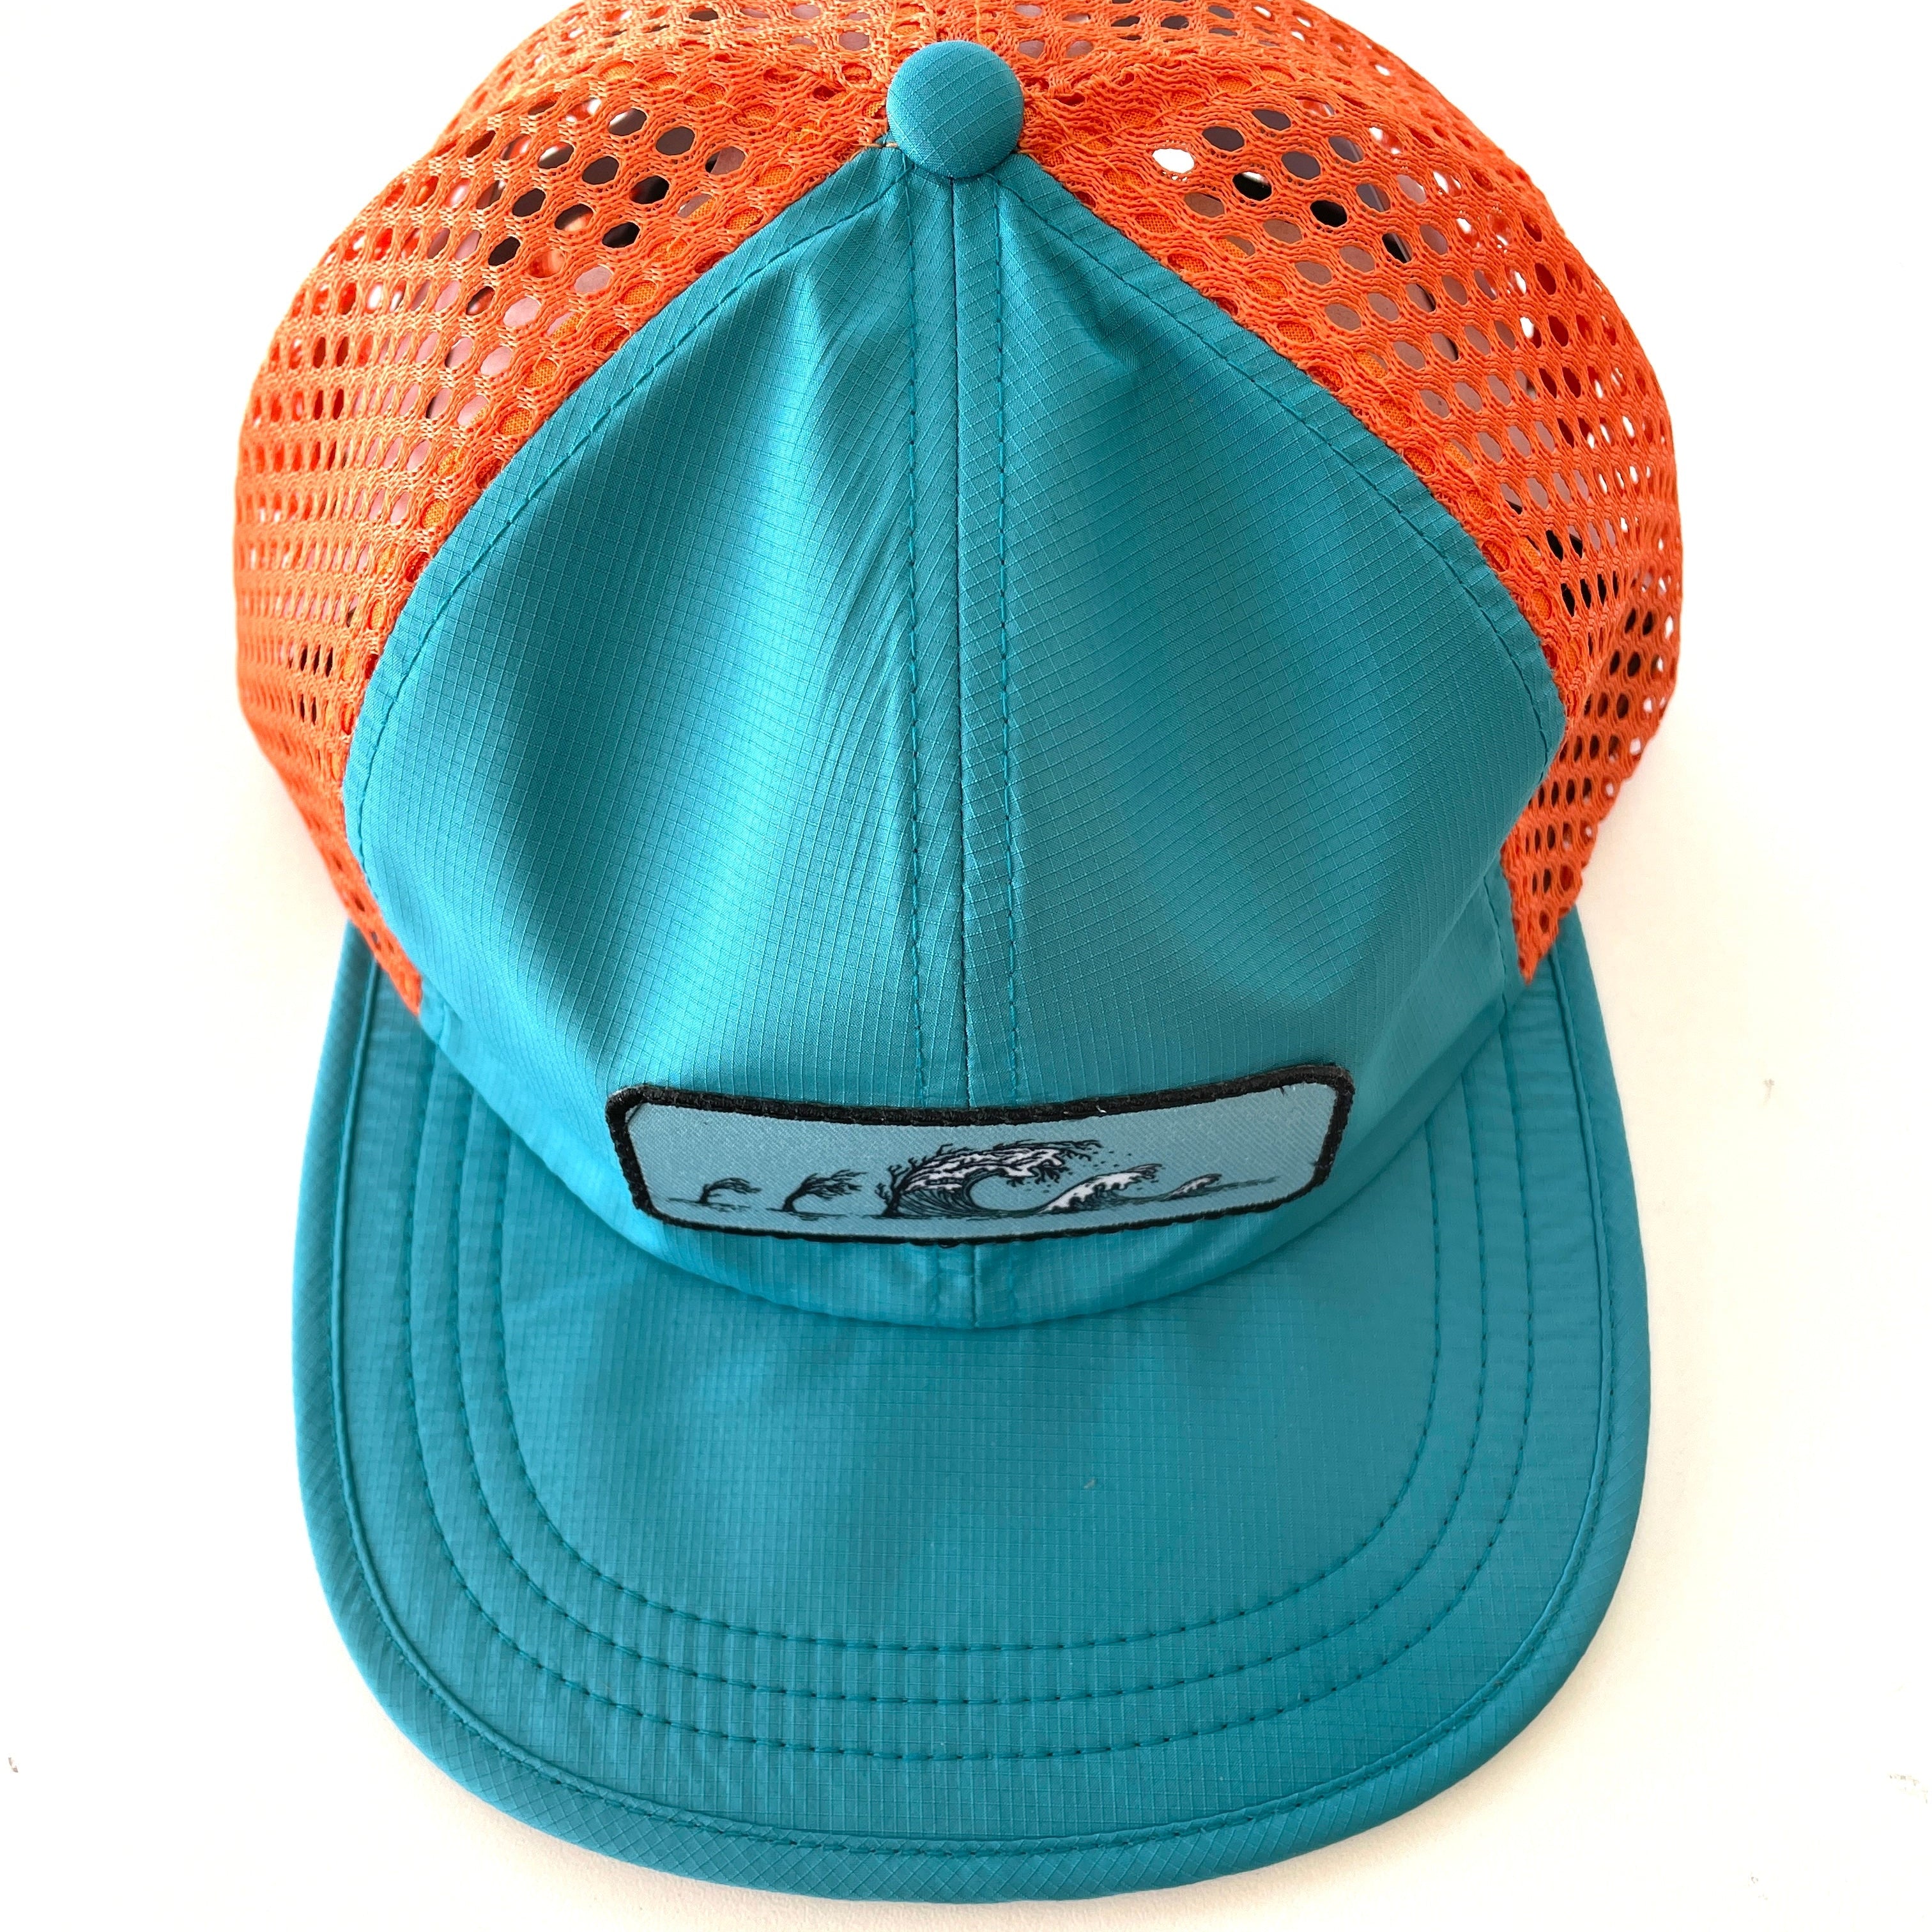 Treewave Teal Orange Hat